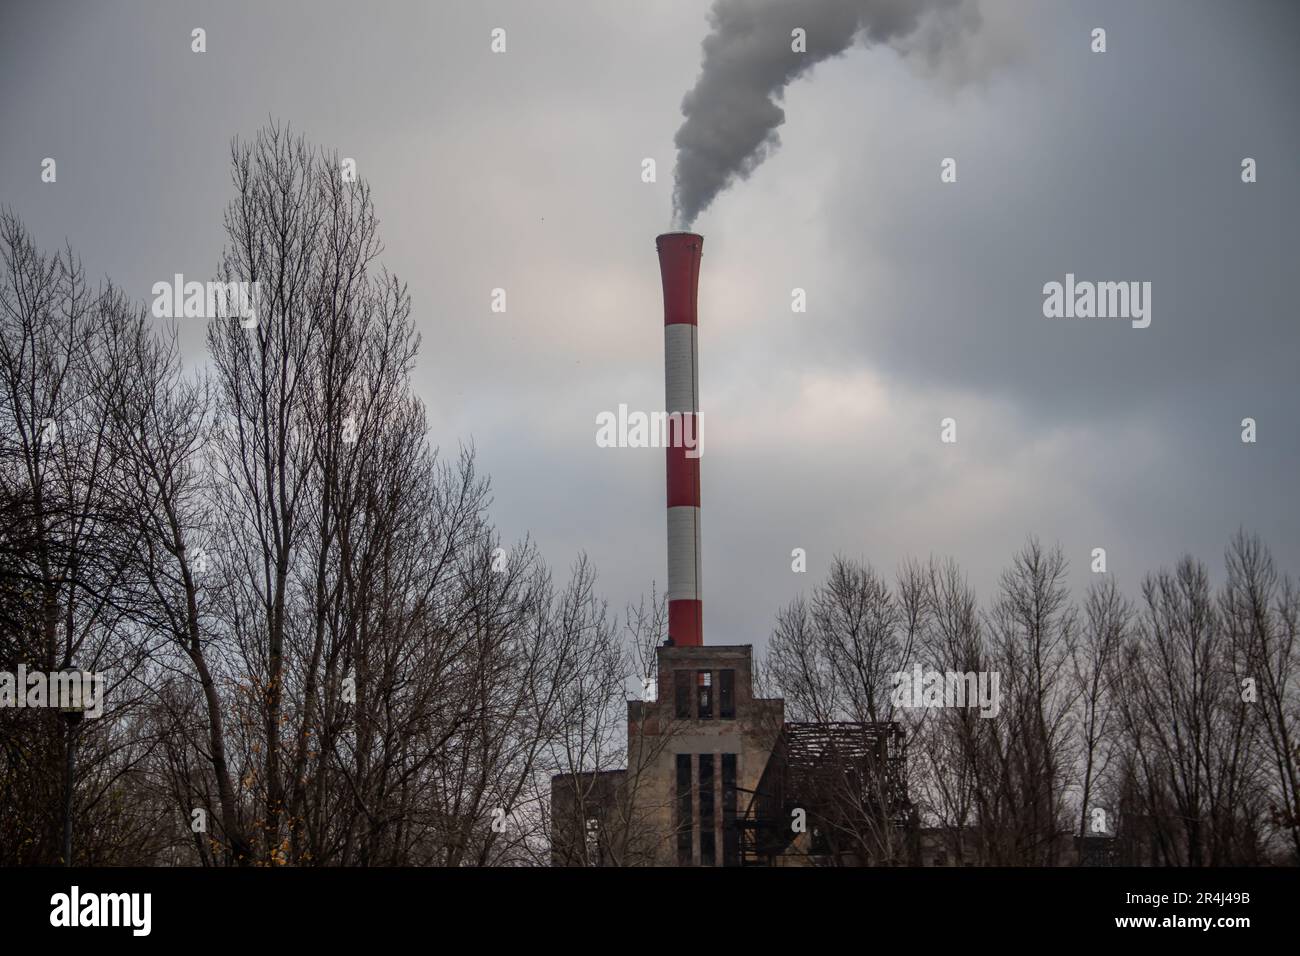 La pollution urbaine mélangée au brouillard matinal, le paysage urbain de Belgrade, permet de préserver l'environnement et l'empreinte carbone Banque D'Images